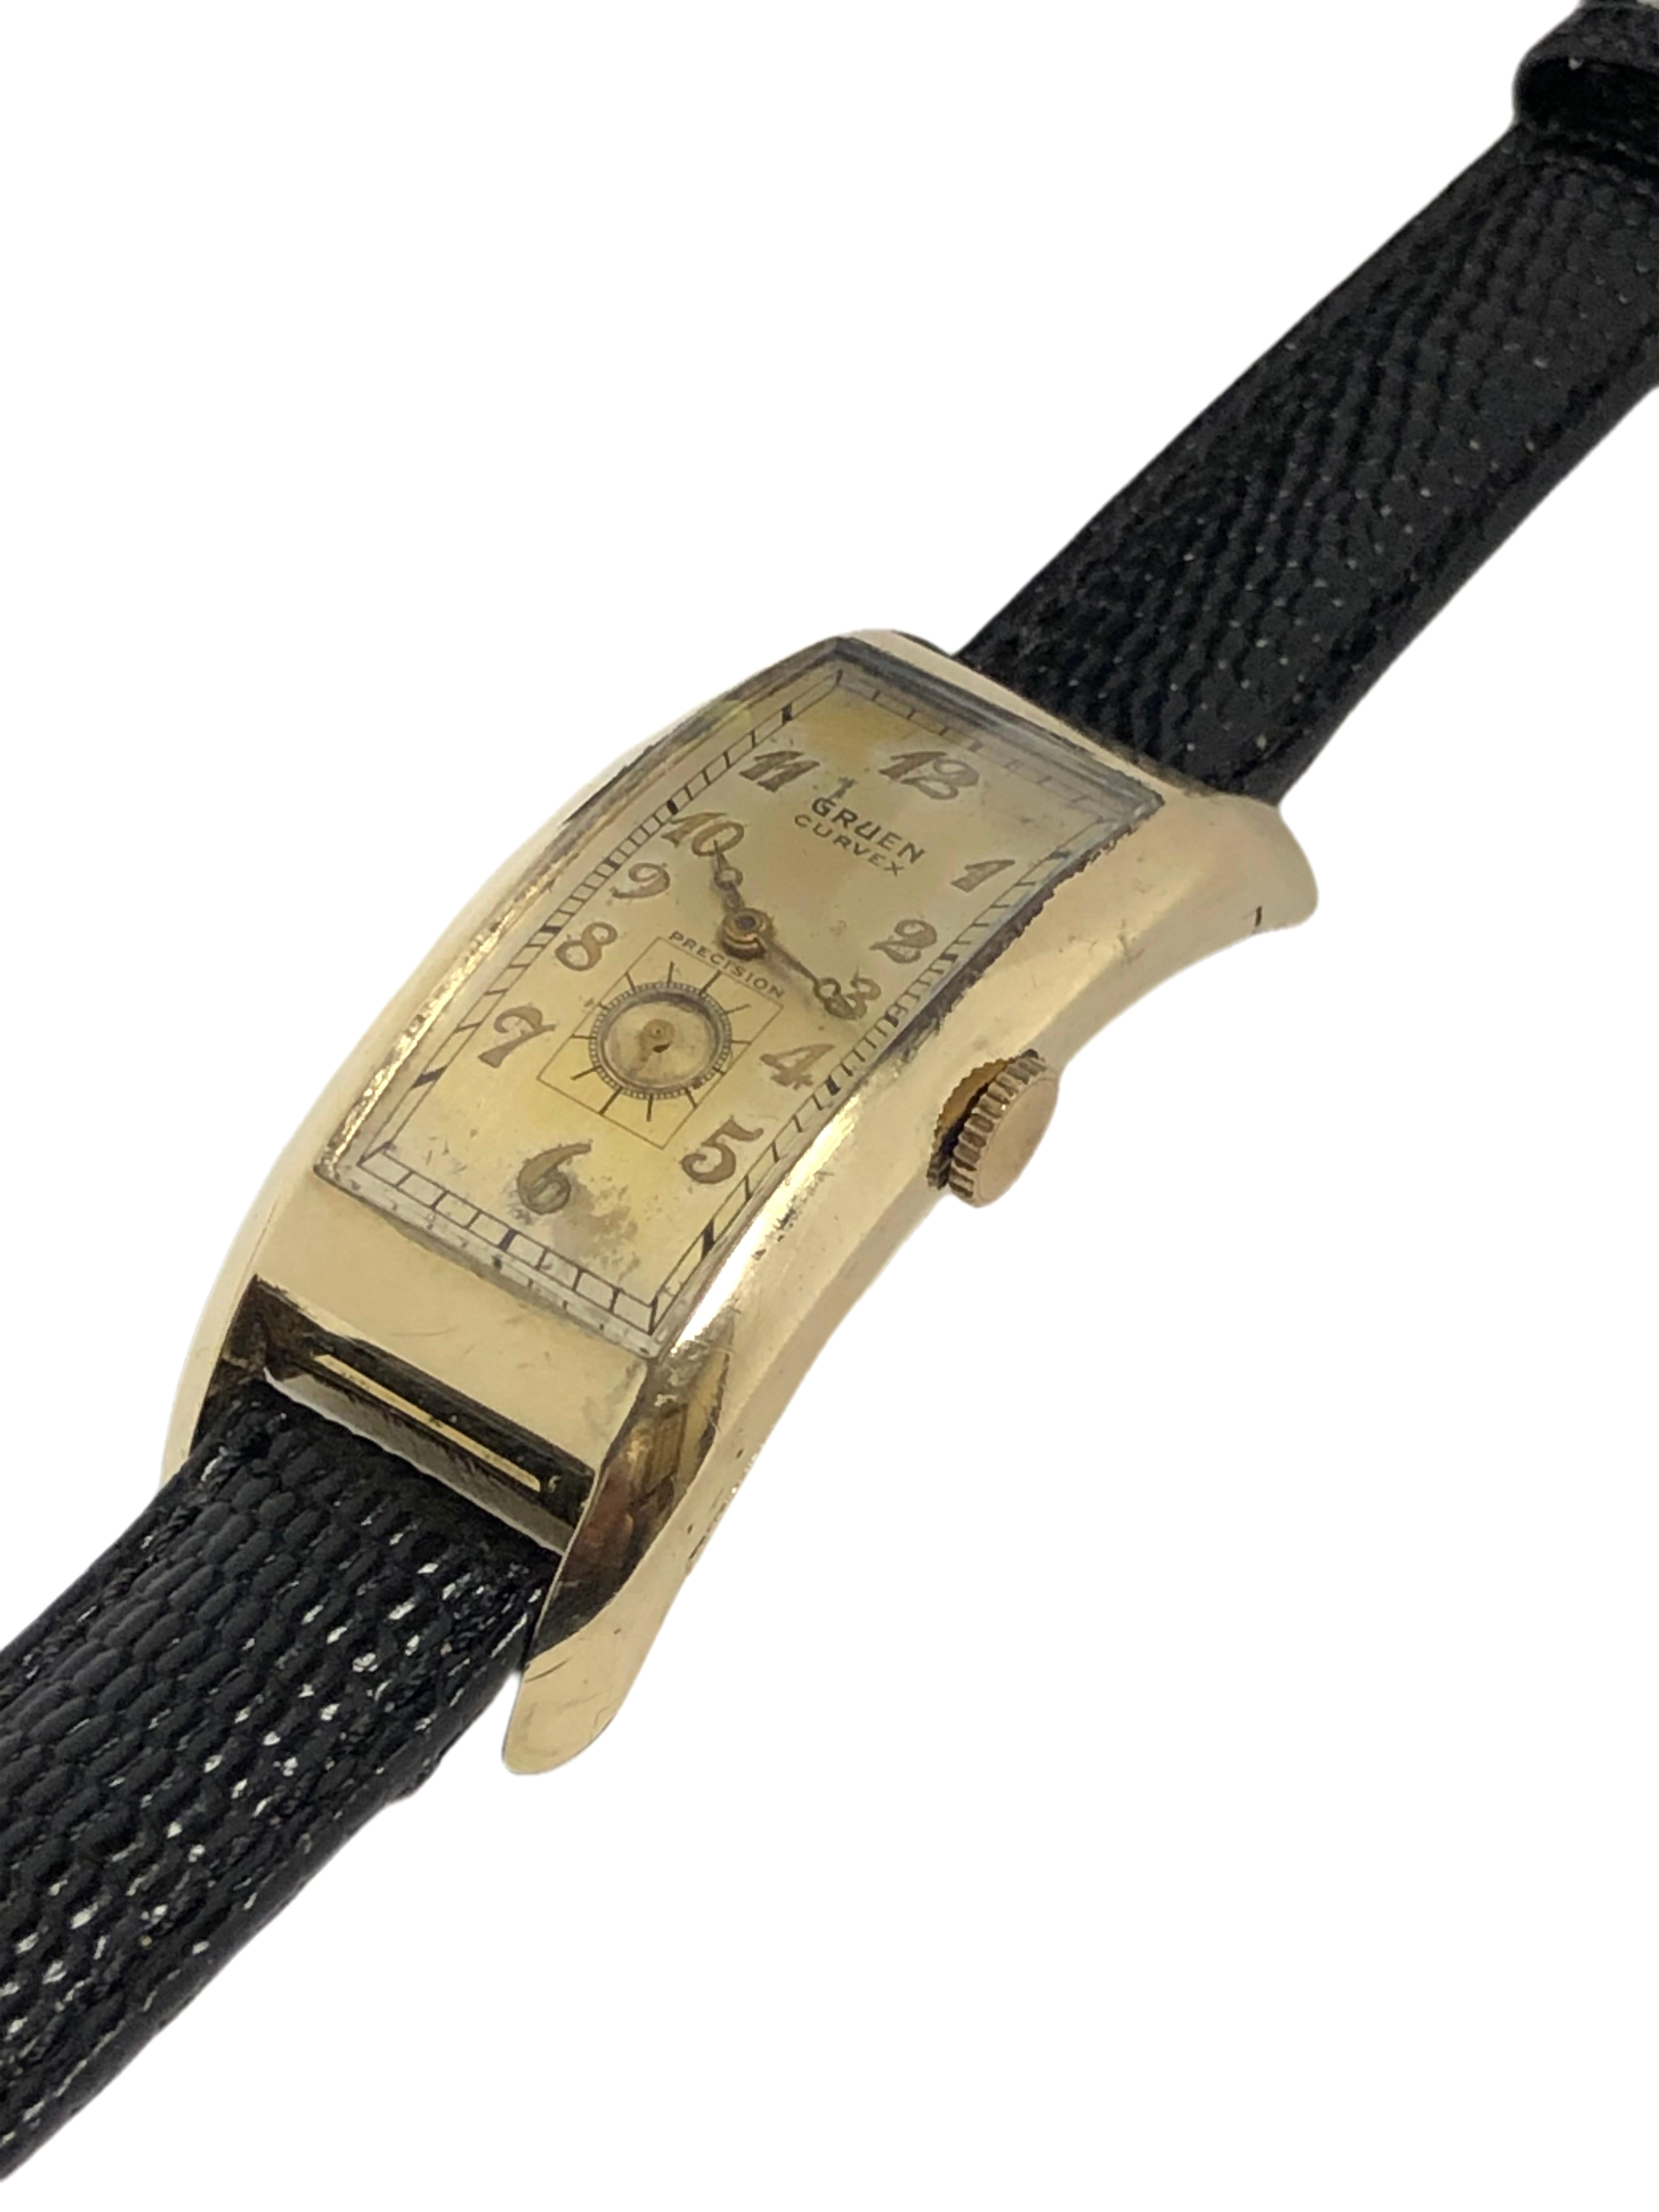 Circa 1939 Gruen Curvex Majesty Wrist Watch, 52 M.M. extreme curved Yellow Gold Filled 2 Piece case. Calibre 330 Mouvement à remontage manuel, cadran argenté d'origine avec index en relief et aiguille des secondes. La Nature présente une certaine